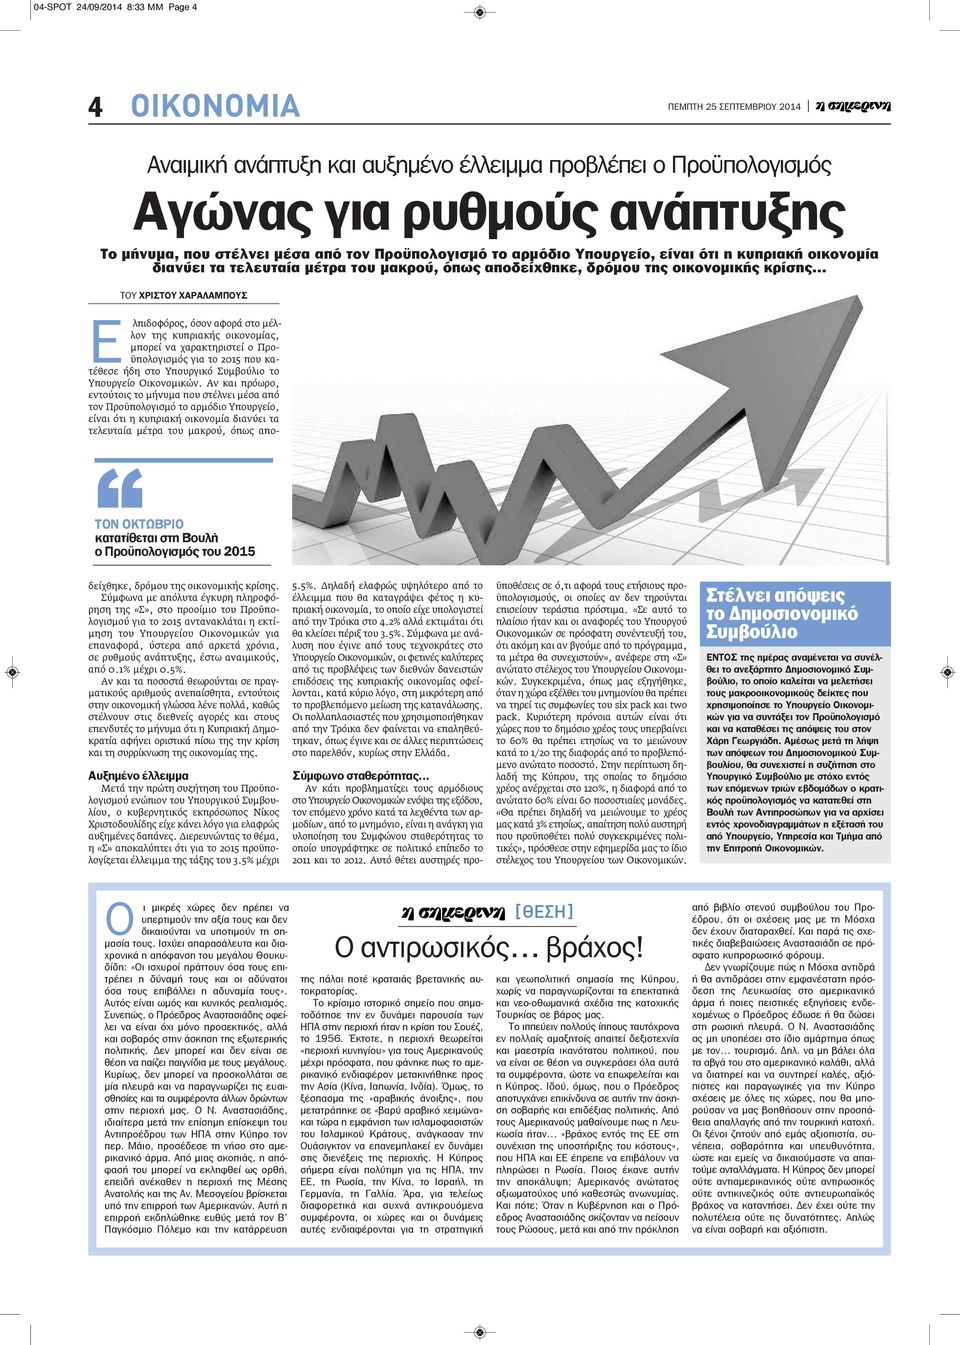 της κυπριακής οικονομίας, μπορεί να χαρακτηριστεί ο Προϋπολογισμός για το 2015 που κατέθεσε ήδη στο Υπουργικό Συμβούλιο το Υπουργείο Οικονομικών.